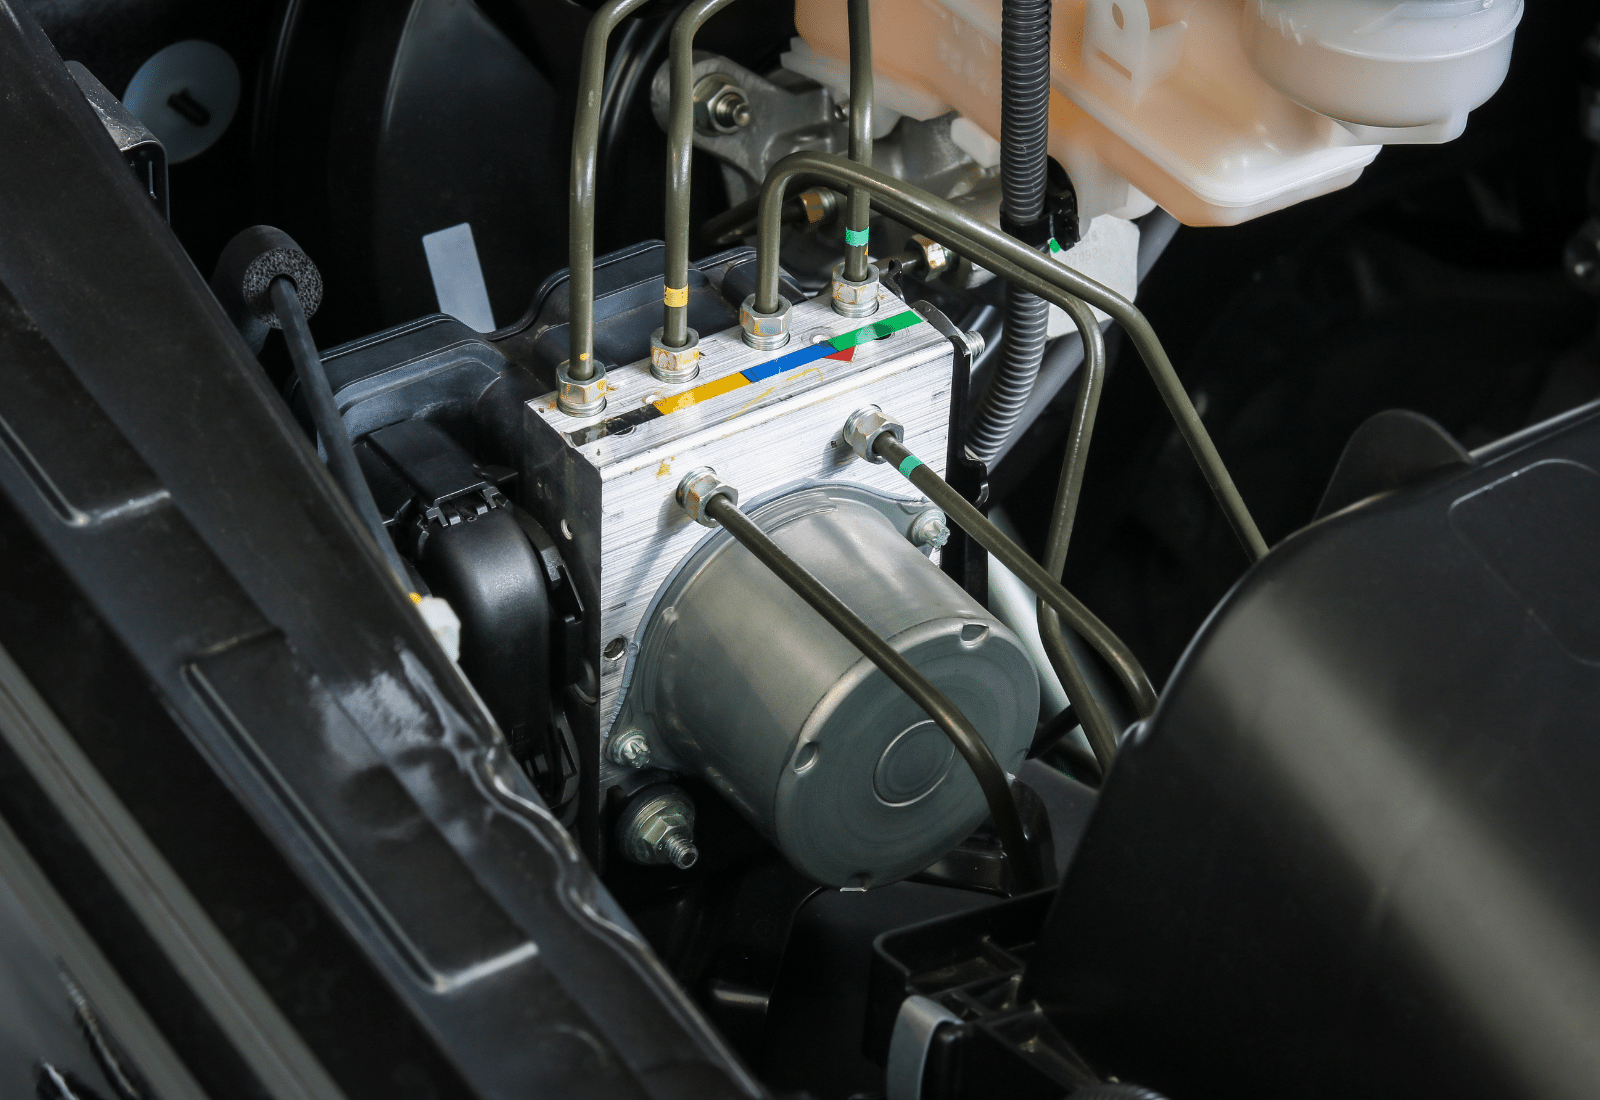 Image of an anti-lock braking system